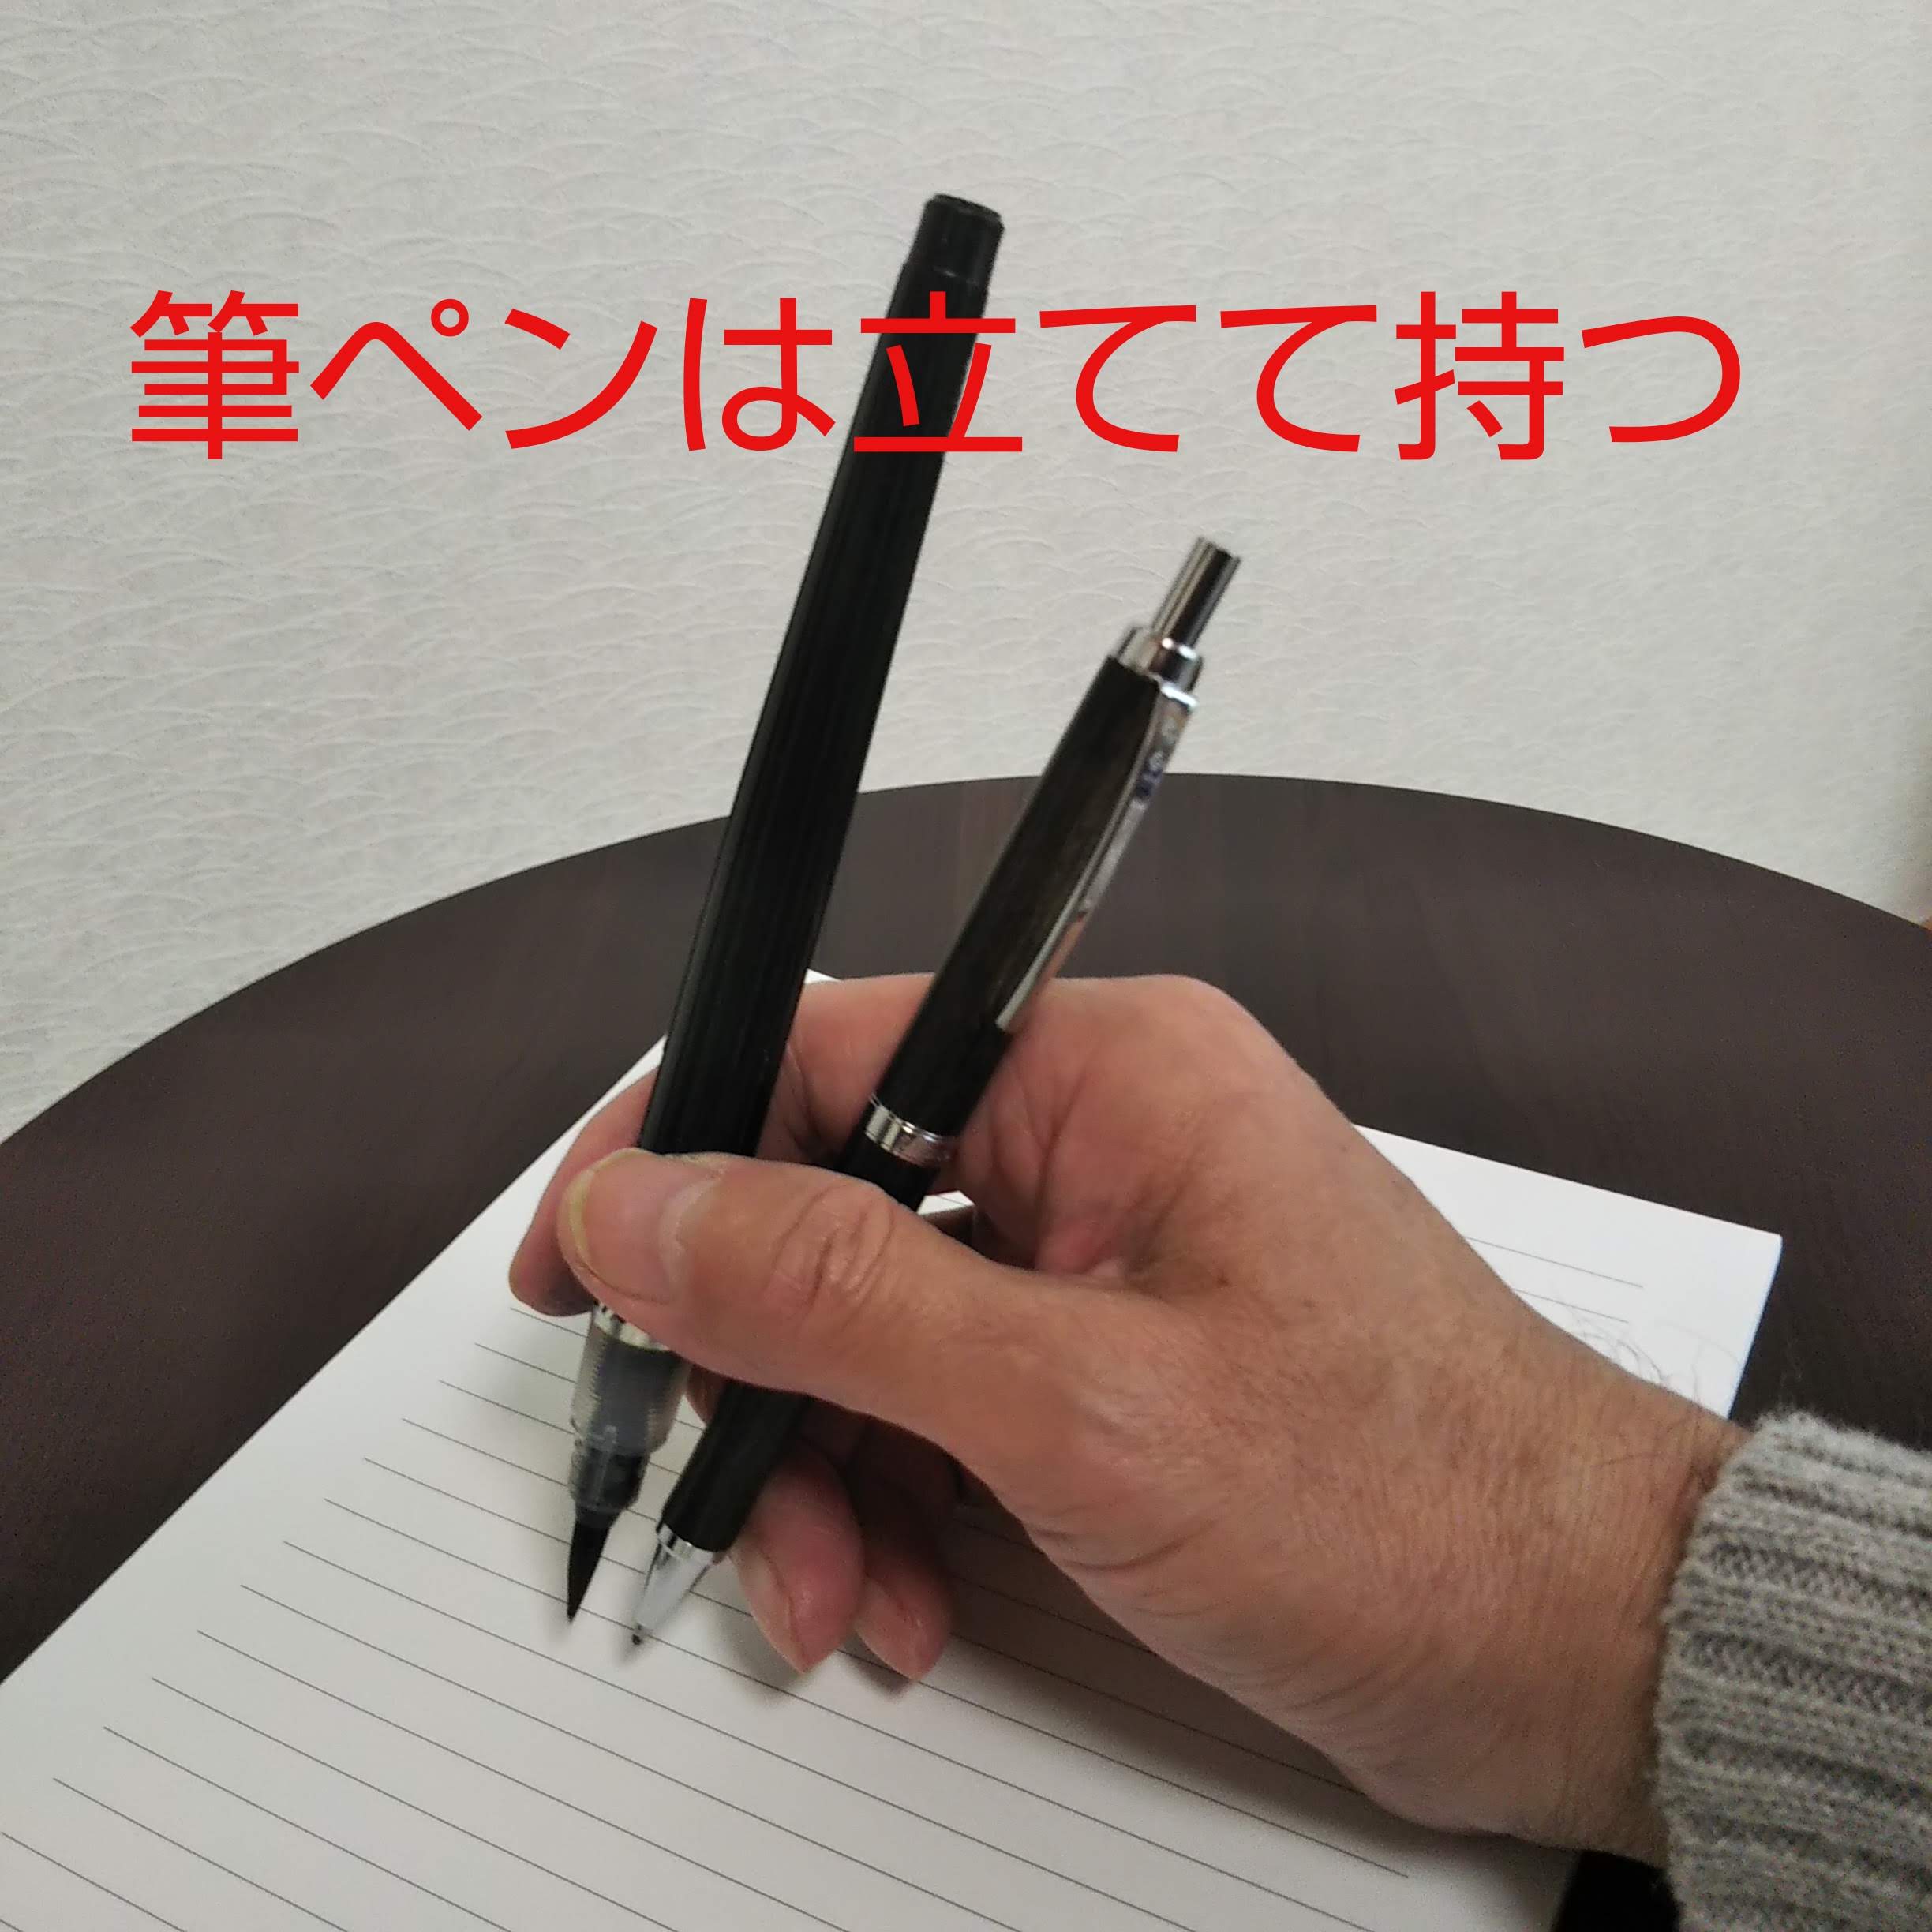 美文字 のための ペンの持ち方 筆ペン編 翠雲ネット書道教室